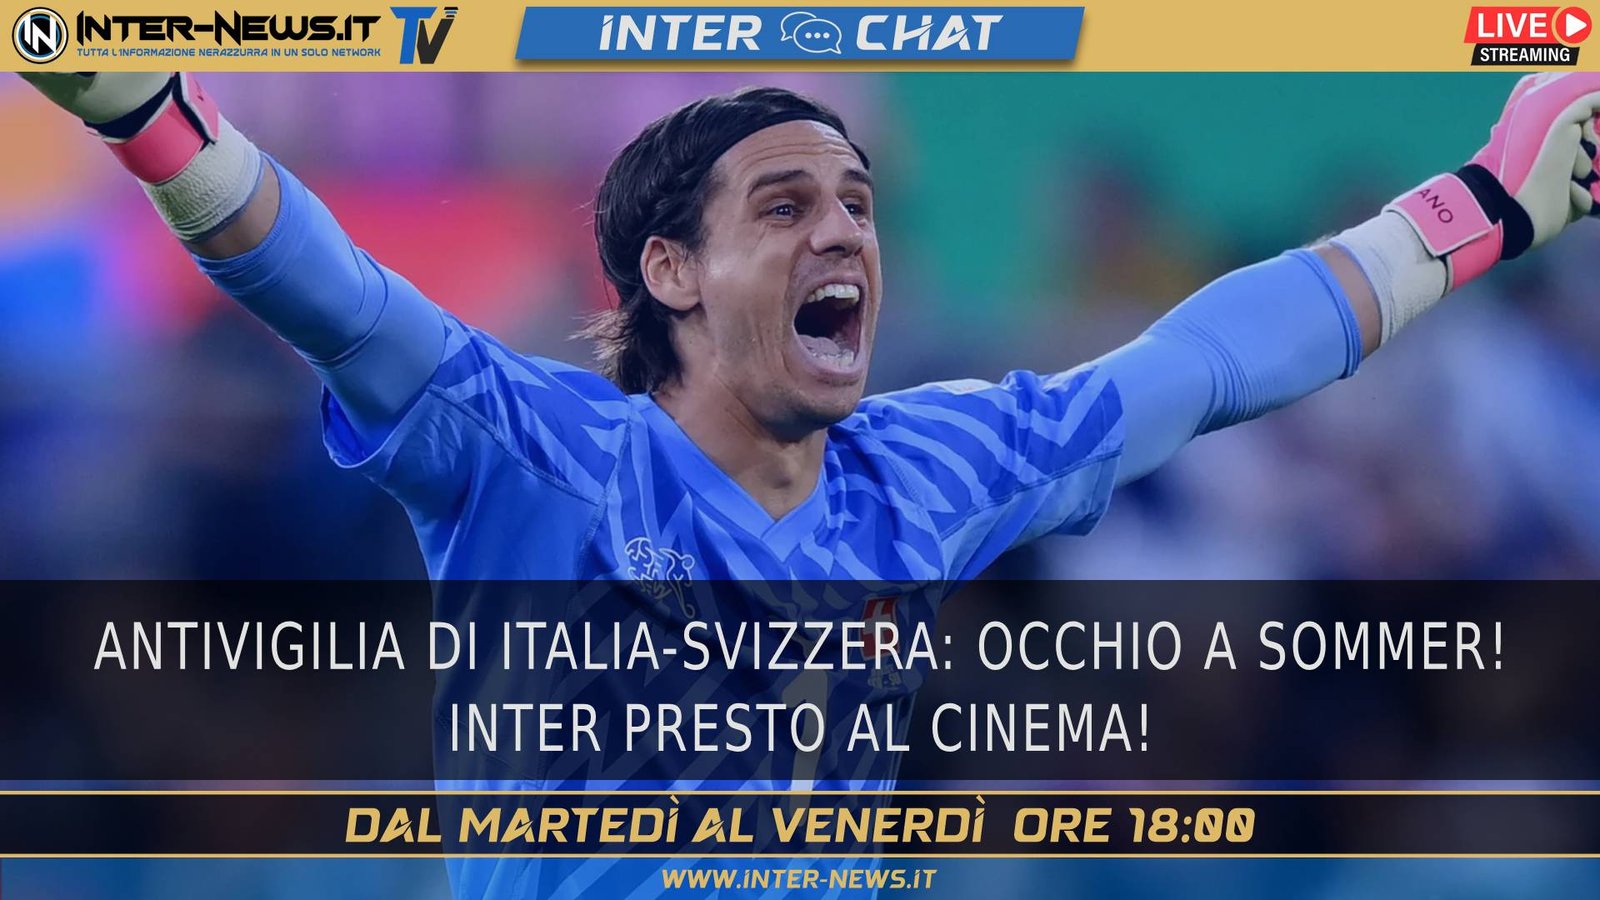 Antivigilia di Italia Svizzera! Inter, incontro in sede | Inter Chat LIVE